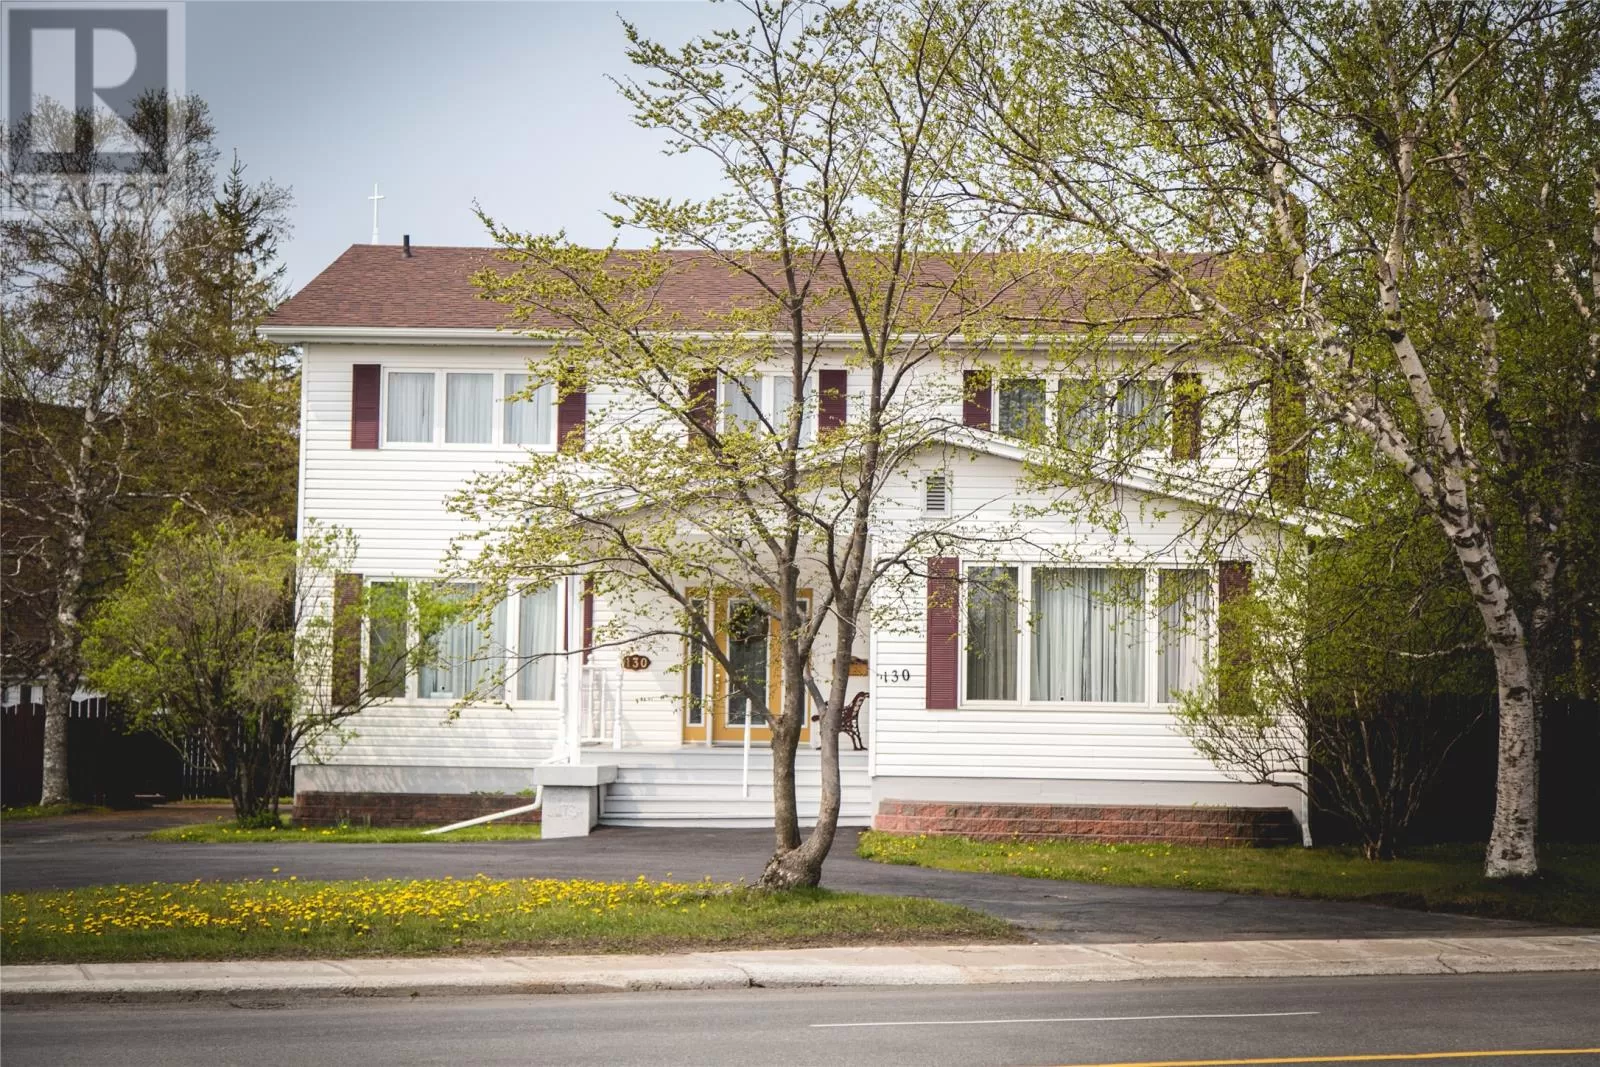 House for rent: 130 Airport Boulevard, Gander, Newfoundland & Labrador A1V 2E7